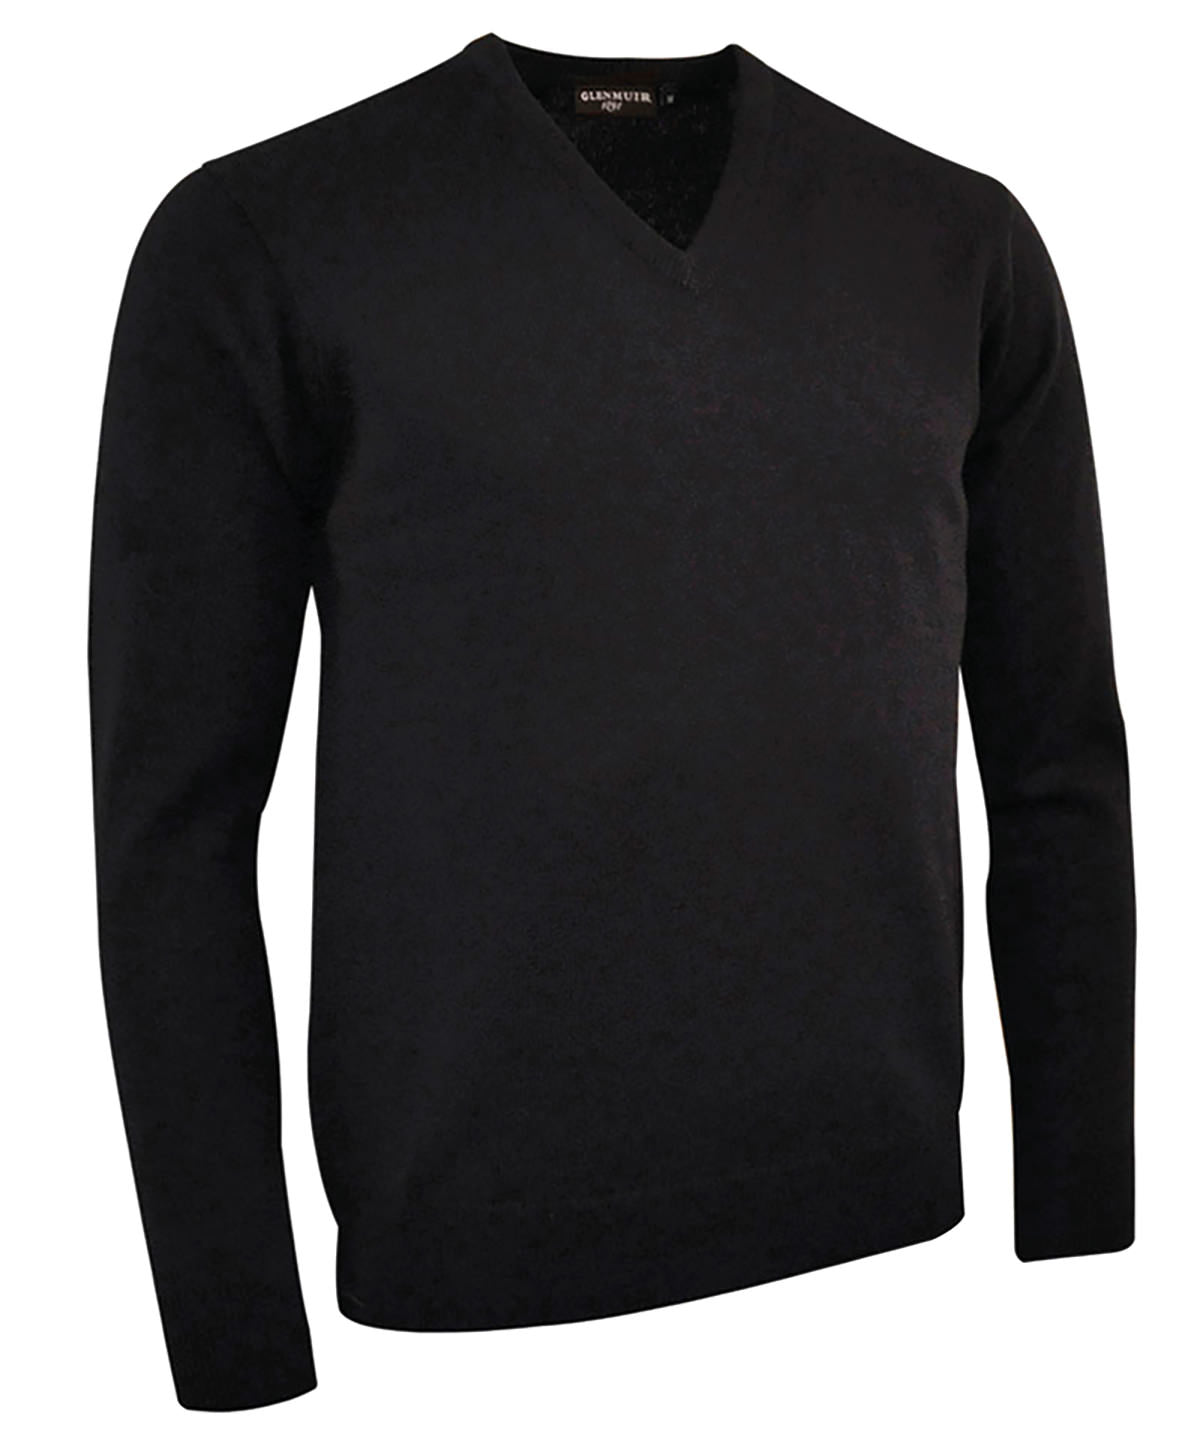 GM010 Glenmuir Black g.Lomond lambswool v-neck sweater (MKL5900VN-LOM)